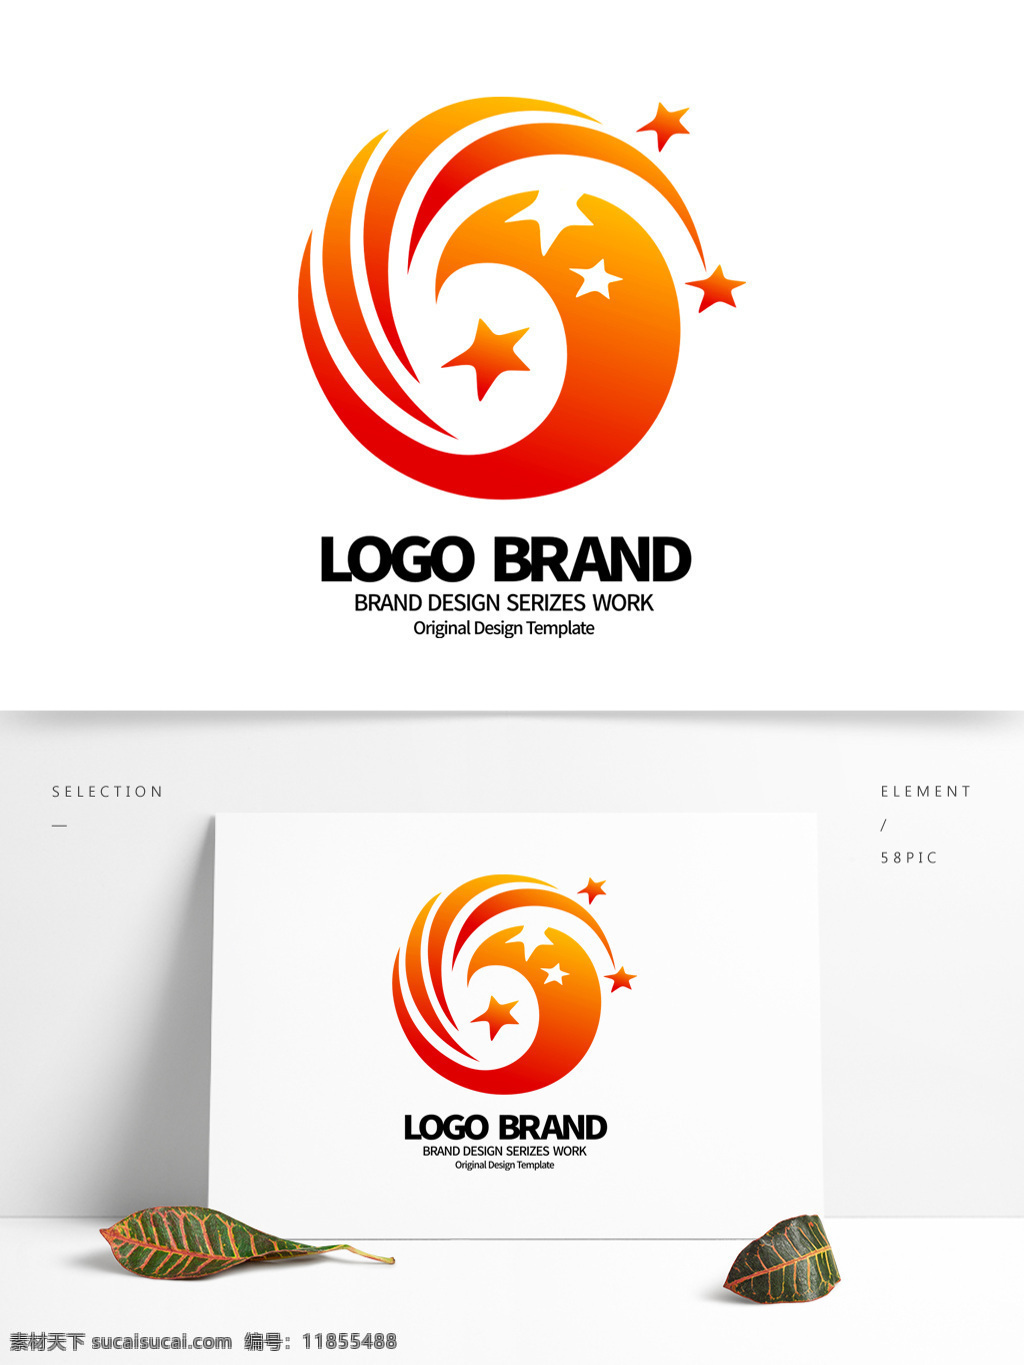 原创 红 黄 星形 c 字母 公司 logo 标志设计 积分图标 j 公司标志设计 企业 会徽标志设计 企业标志设计